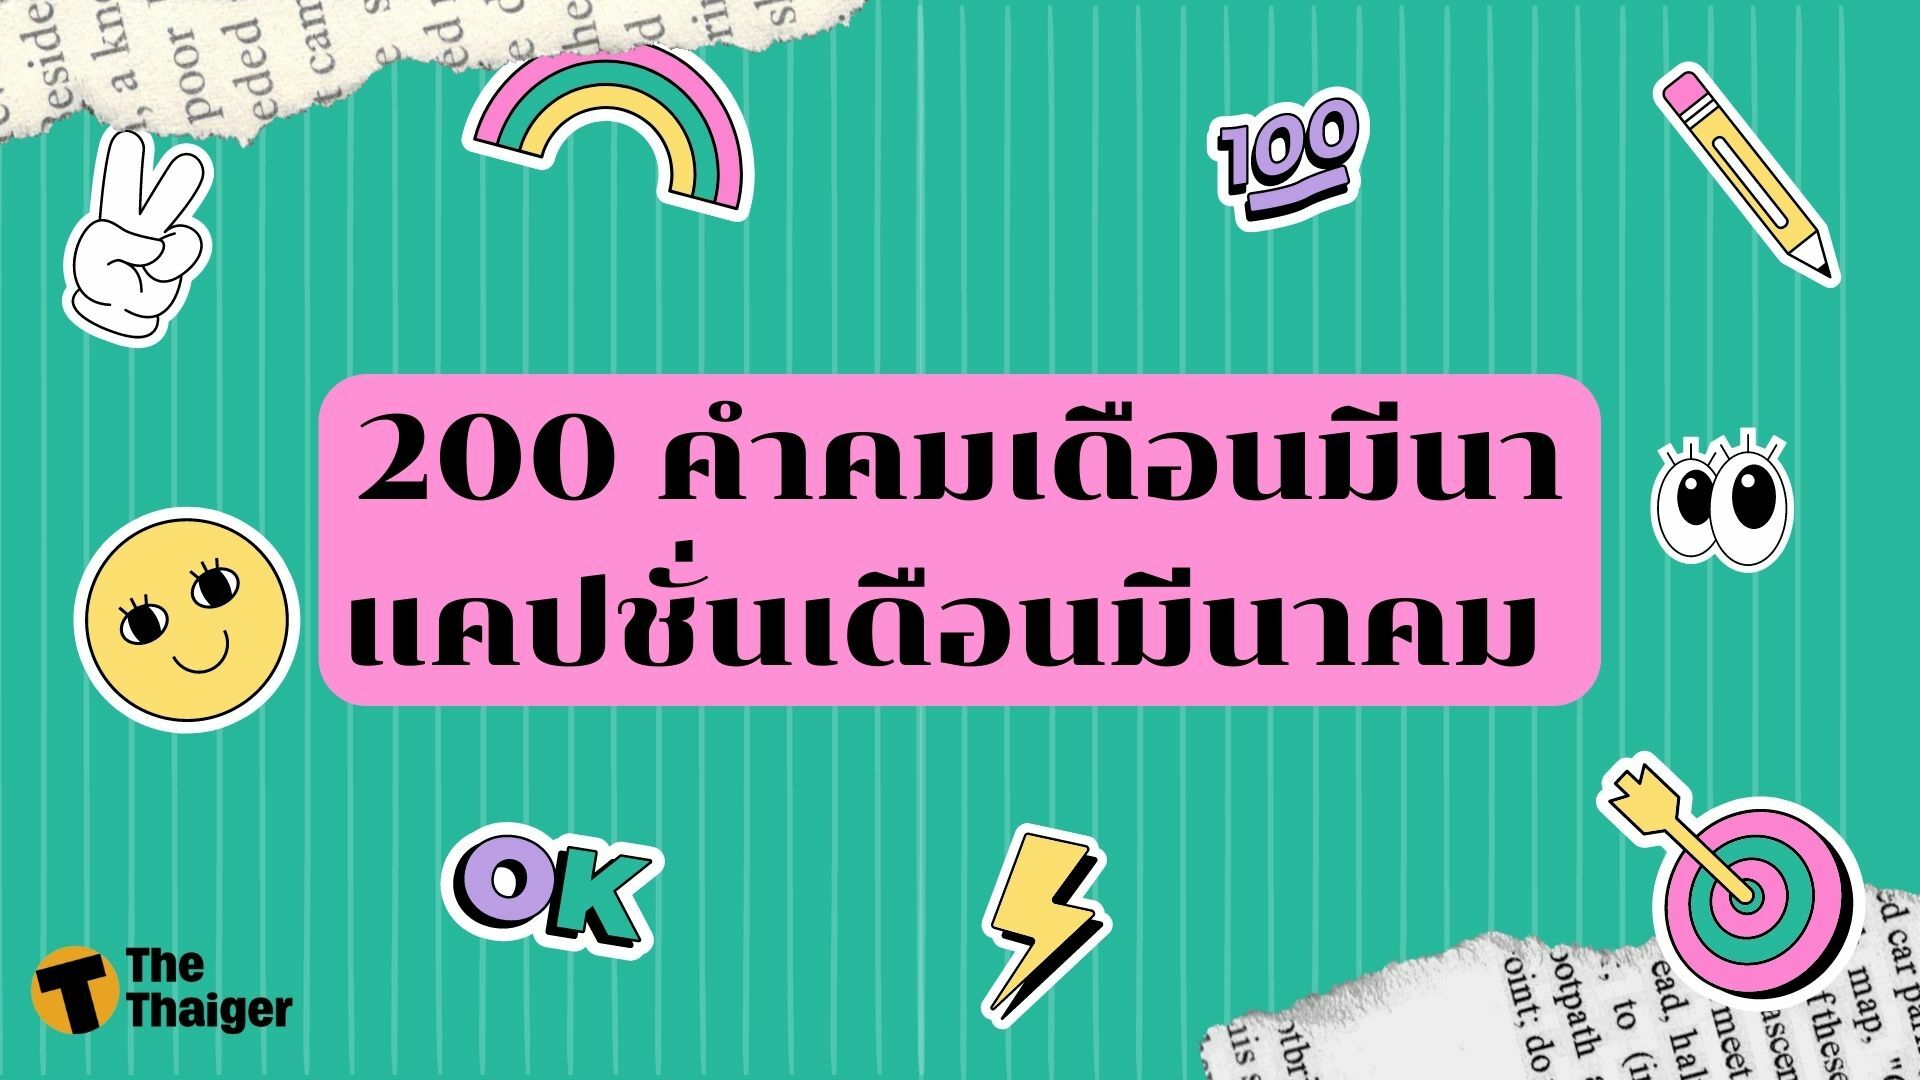 รวม 200 คำคมเดือนมีนา แคปชั่นเดือนมีนาคม ประโยคไหนก็ปัง | Thaiger ข่าวไทย